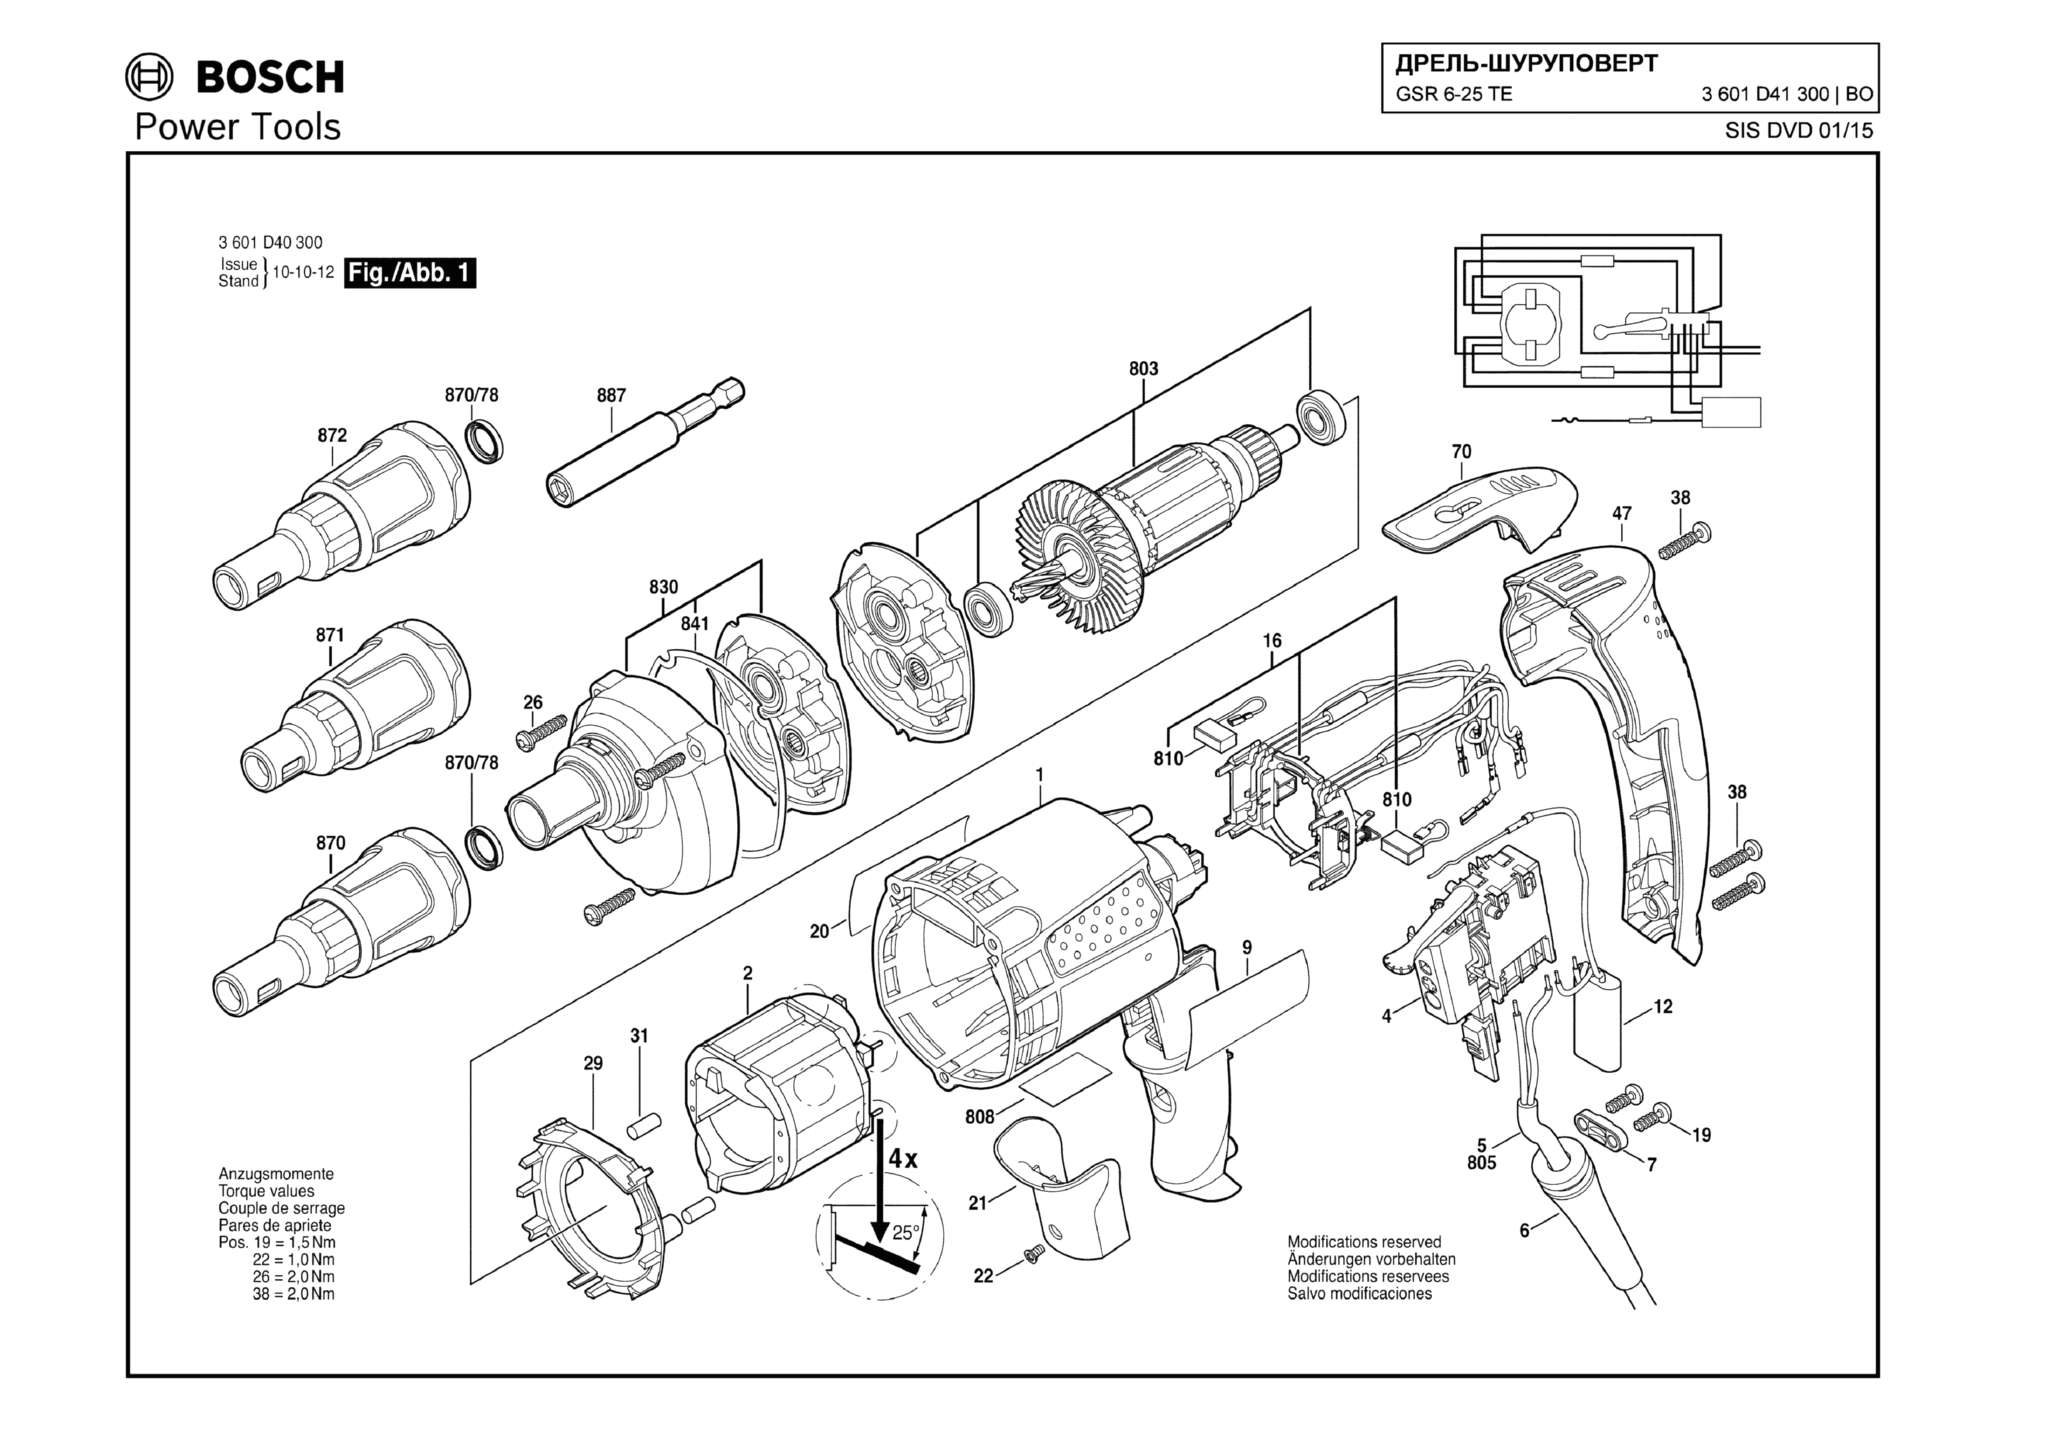 Запчасти, схема и деталировка Bosch GSR 6-25 TE (ТИП 3601D41300)